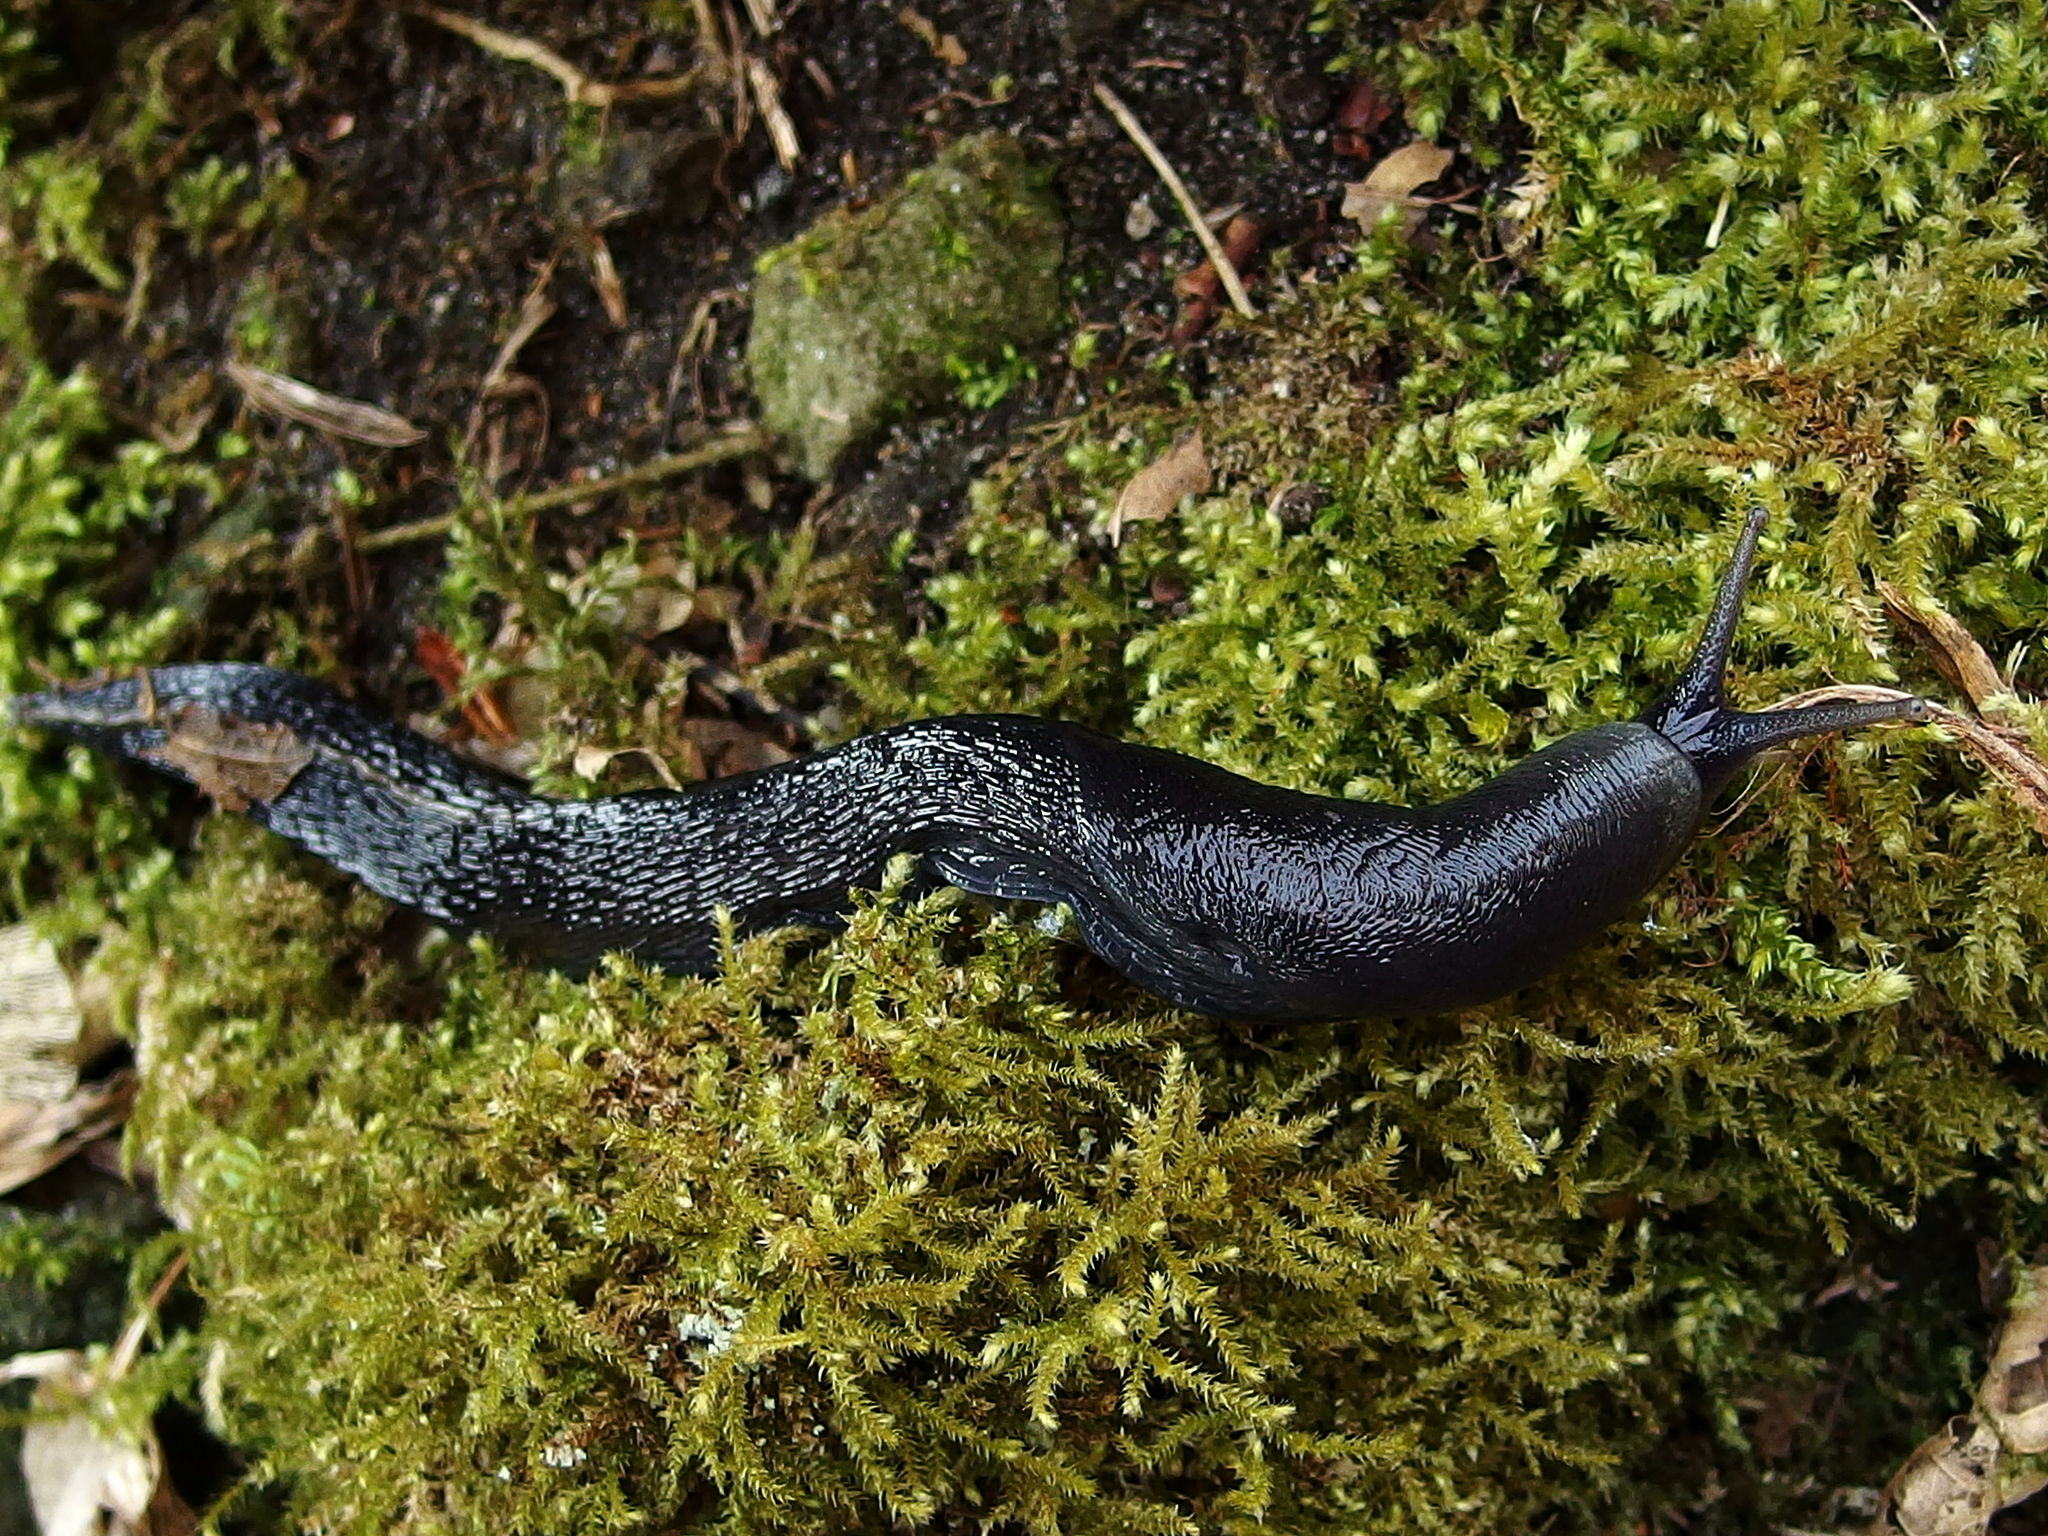 Image of ash-black slug